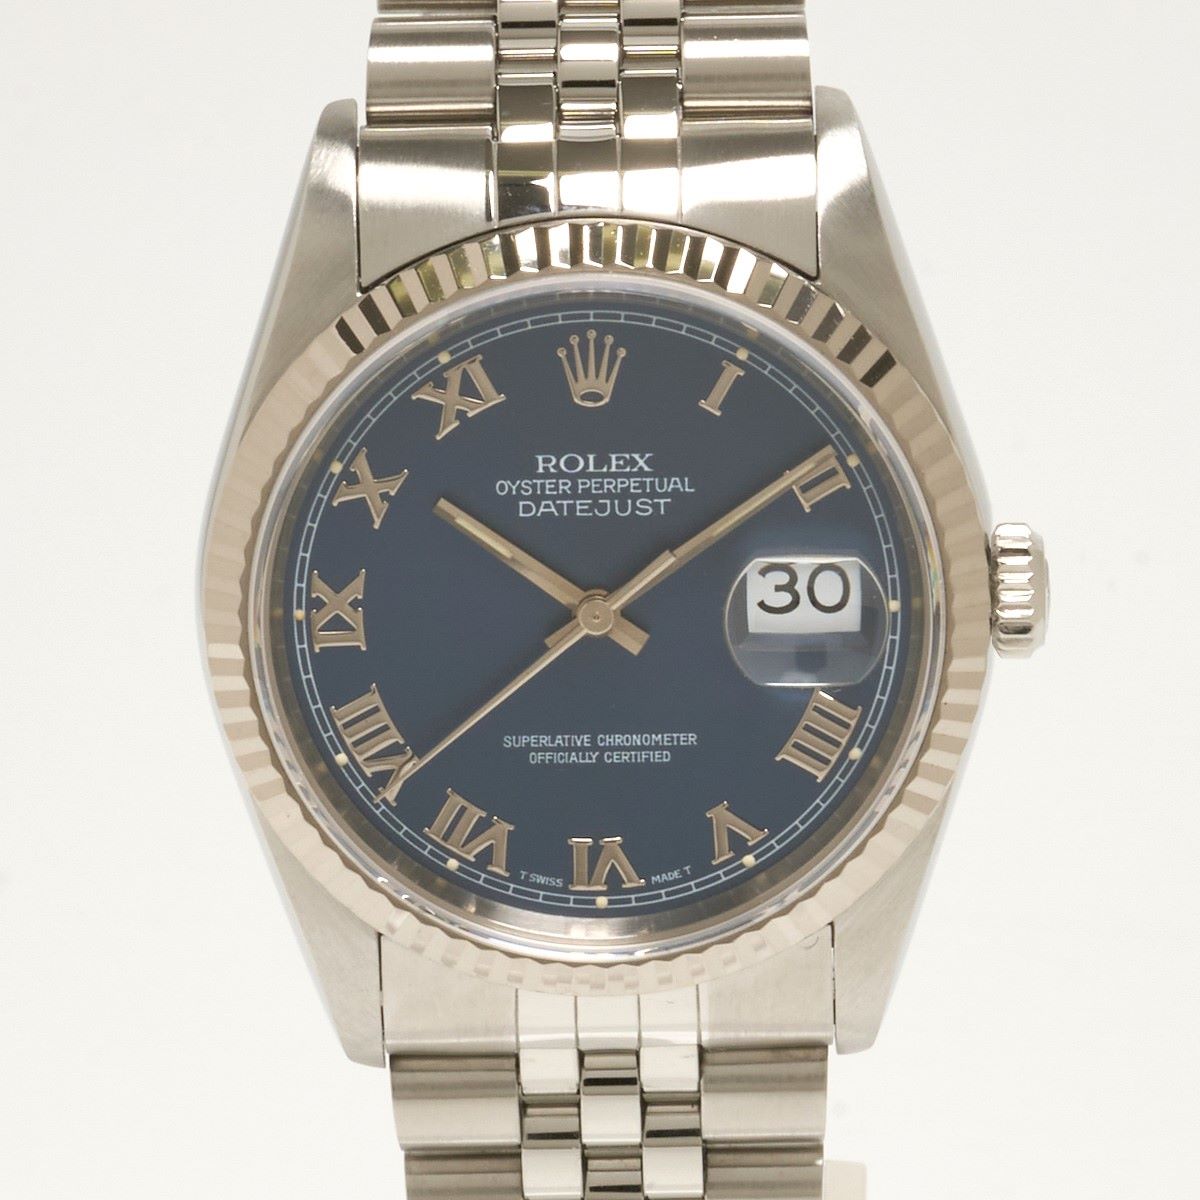 ROLEX ロレックス デイトジャスト 16234 W番 K18WG×SS ブルー文字盤×ホワイトゴールド×シルバー 自動巻 腕時計